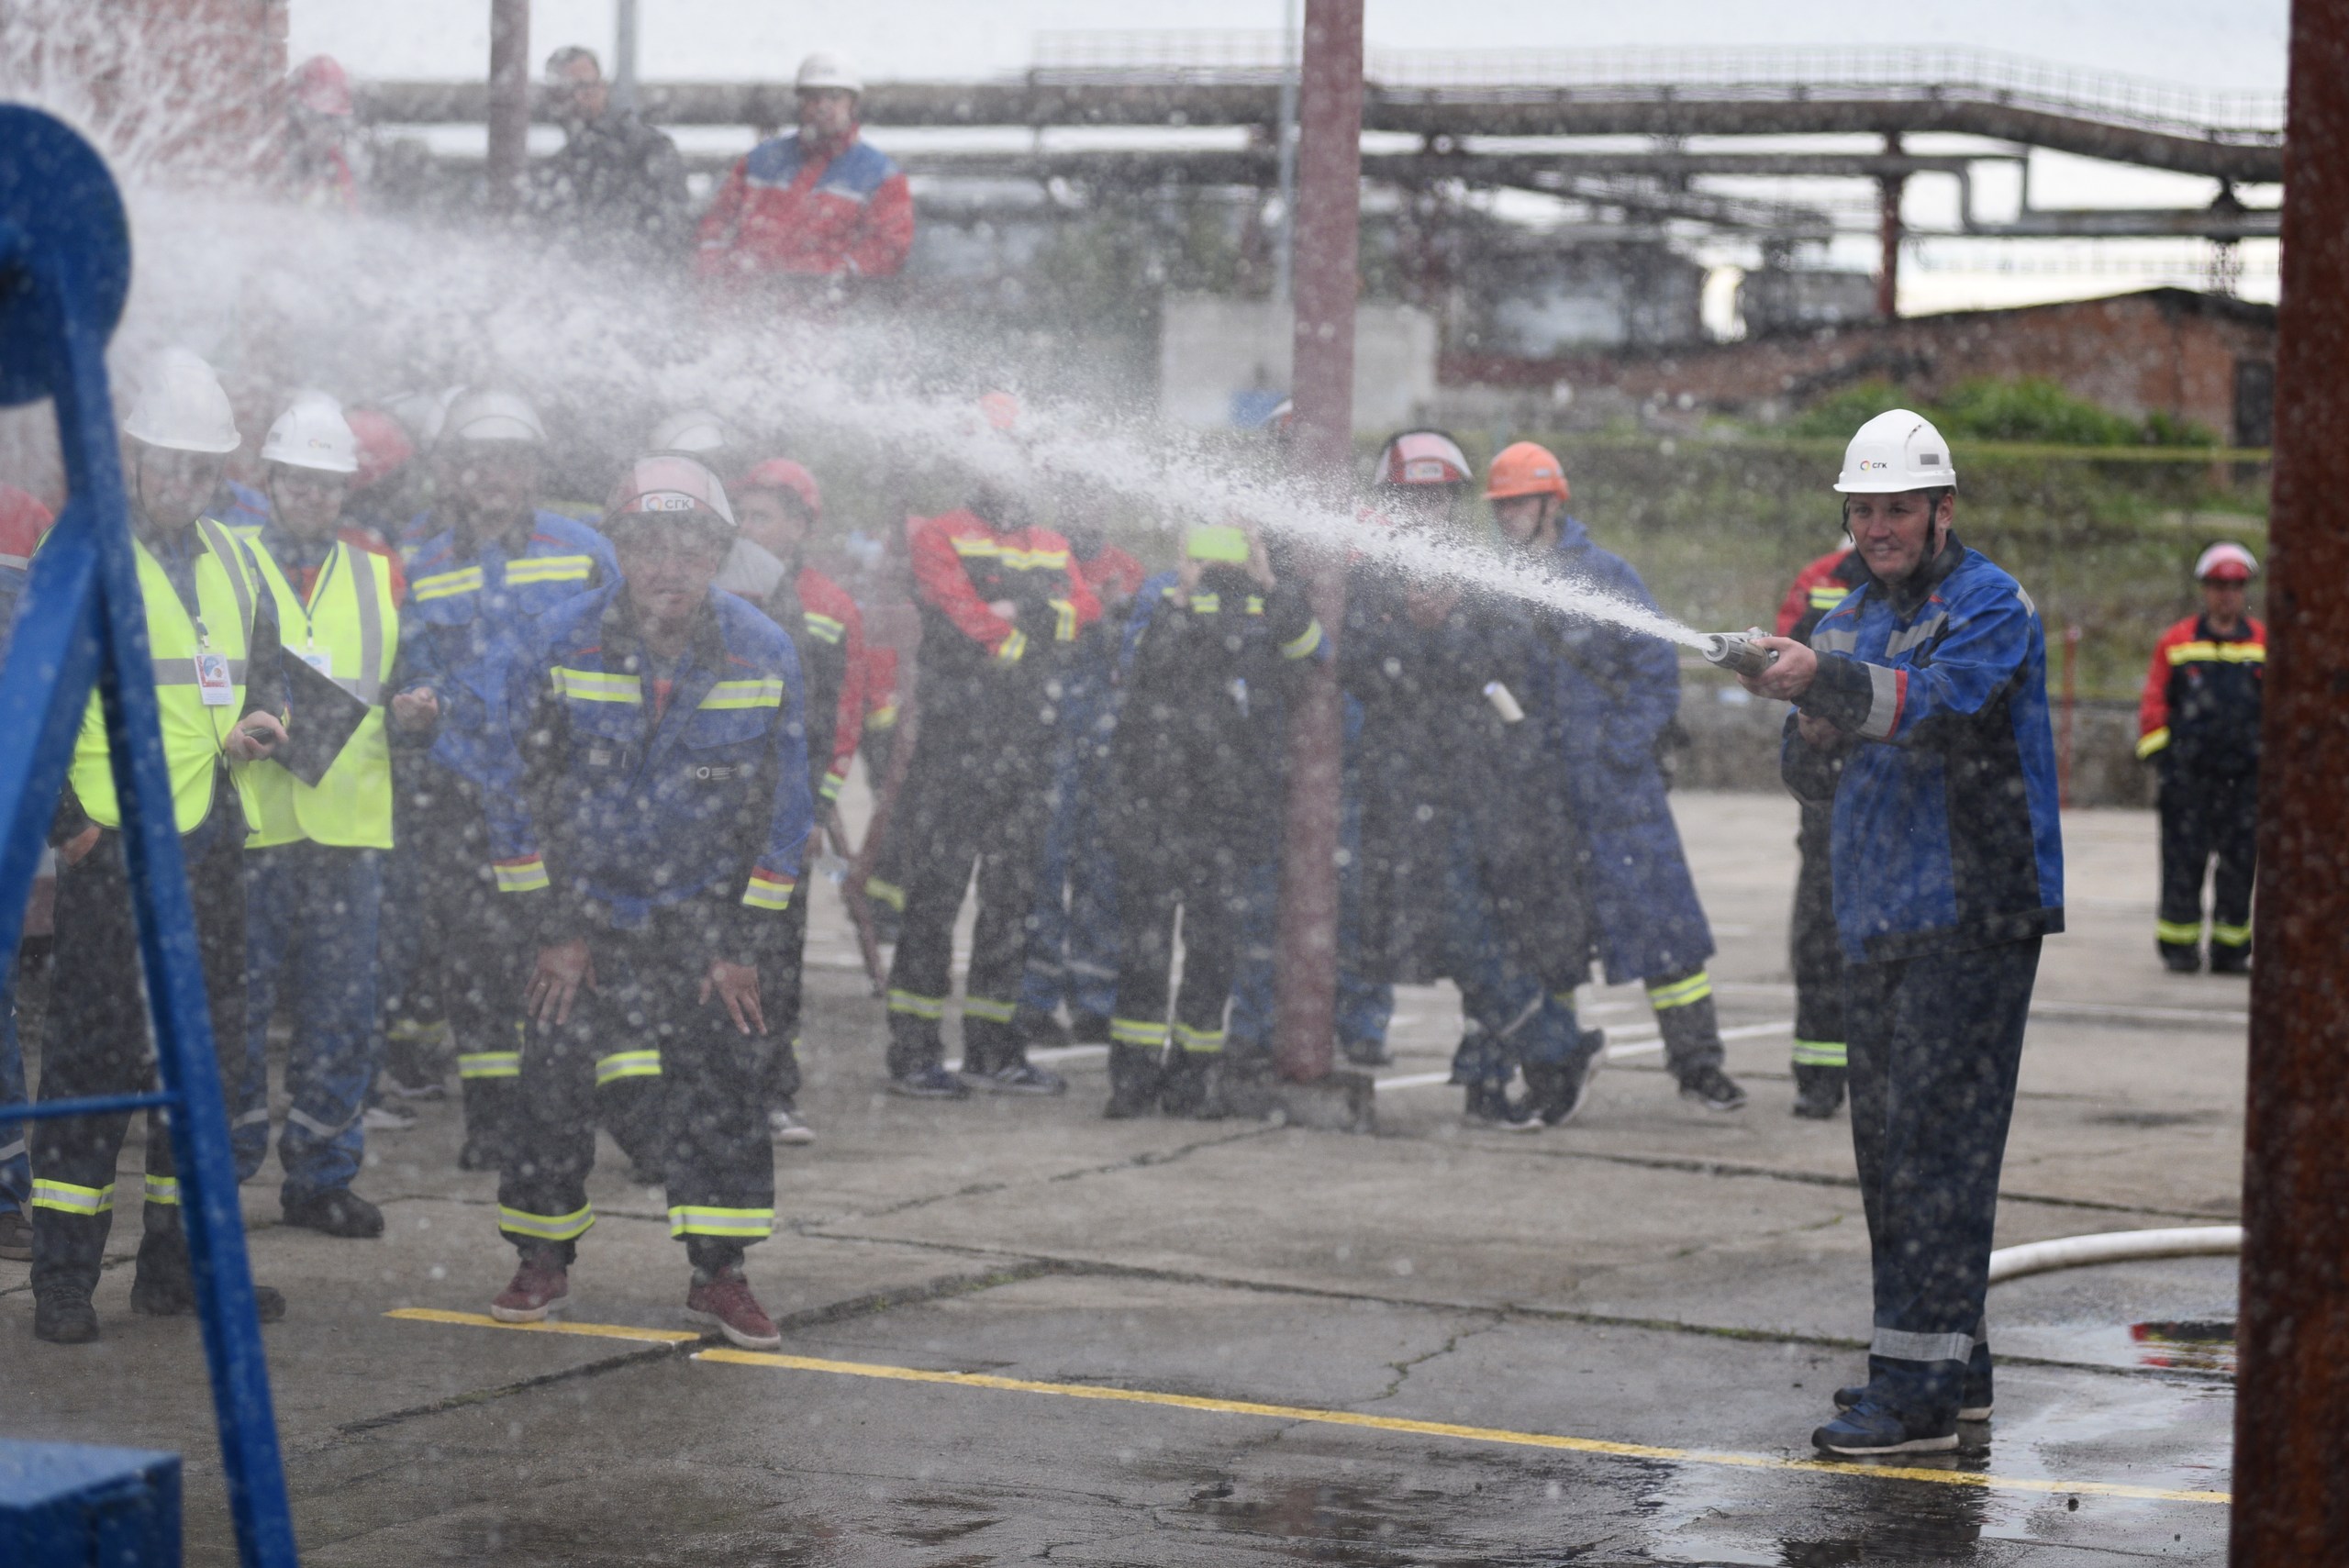 Действуй разумно — оставайся в безопасности: определено лучшее добровольное пожарное формирование СГК в Кузбассе 